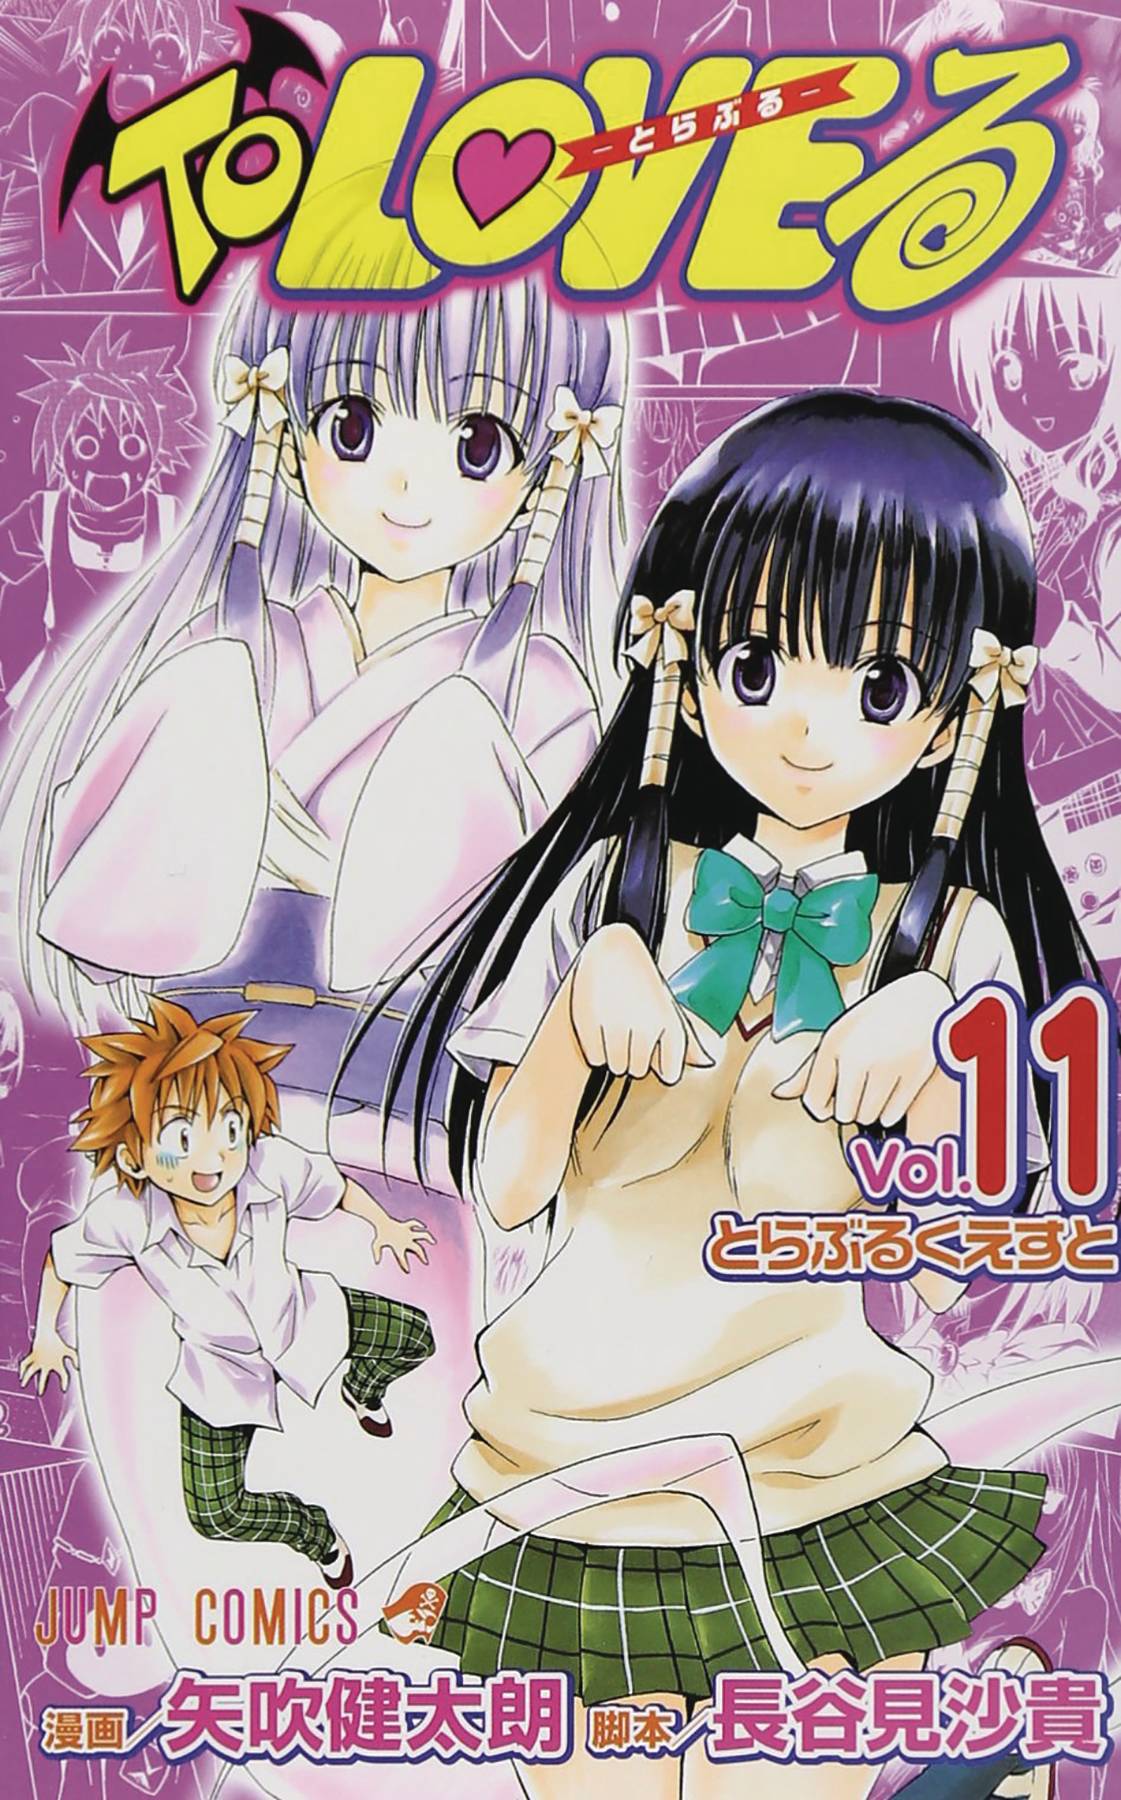 To Love Ru Manga Volume 11-12 Volume 6 (Mature)